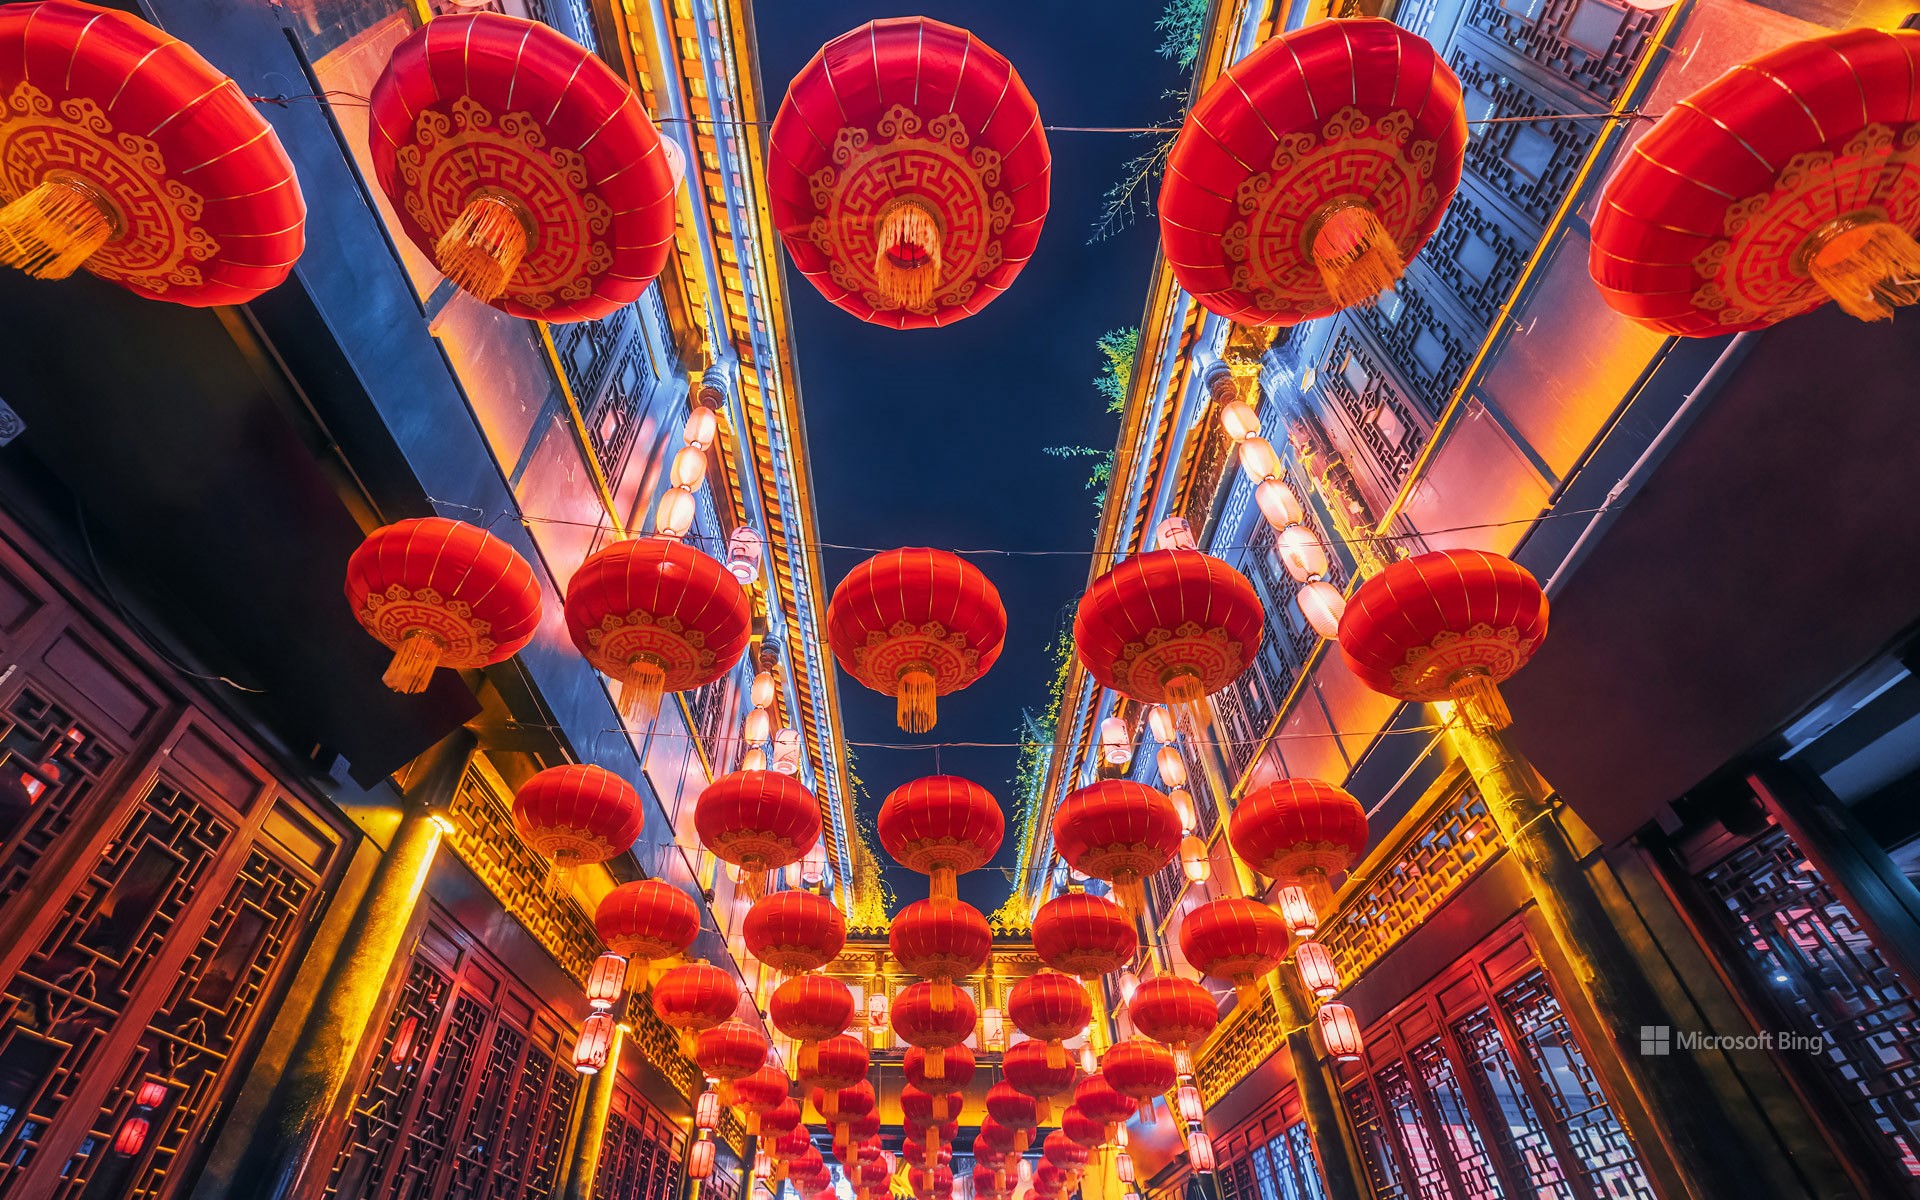 Red lanterns hanging in Jinli Street, Chengdu, China